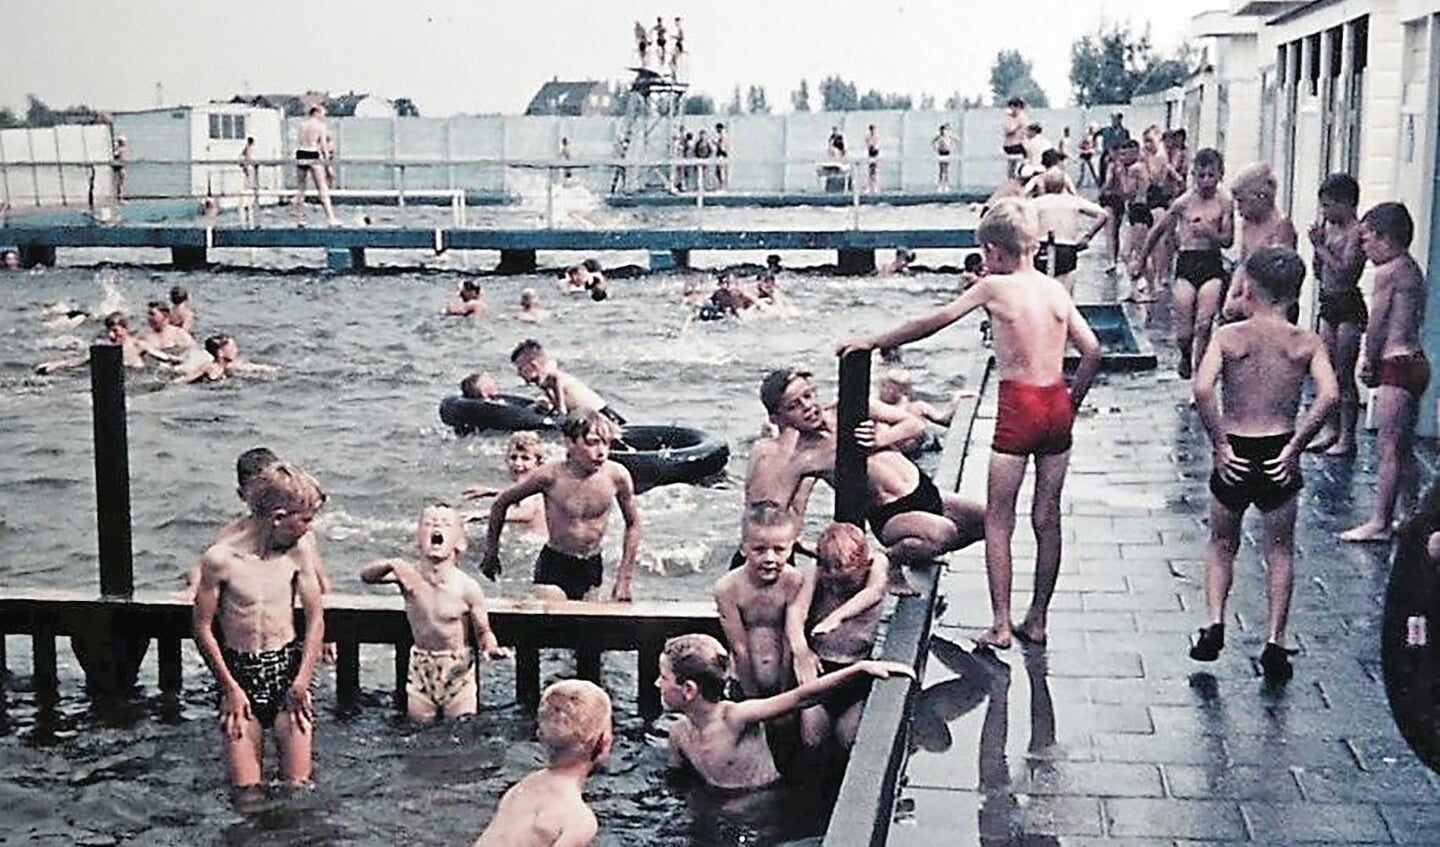 Op deze foto uit 1964 van het Oudewaterse zwembad is duidelijk te zien dat bij de jongens absoluut nog geen sprake was van overgewicht.